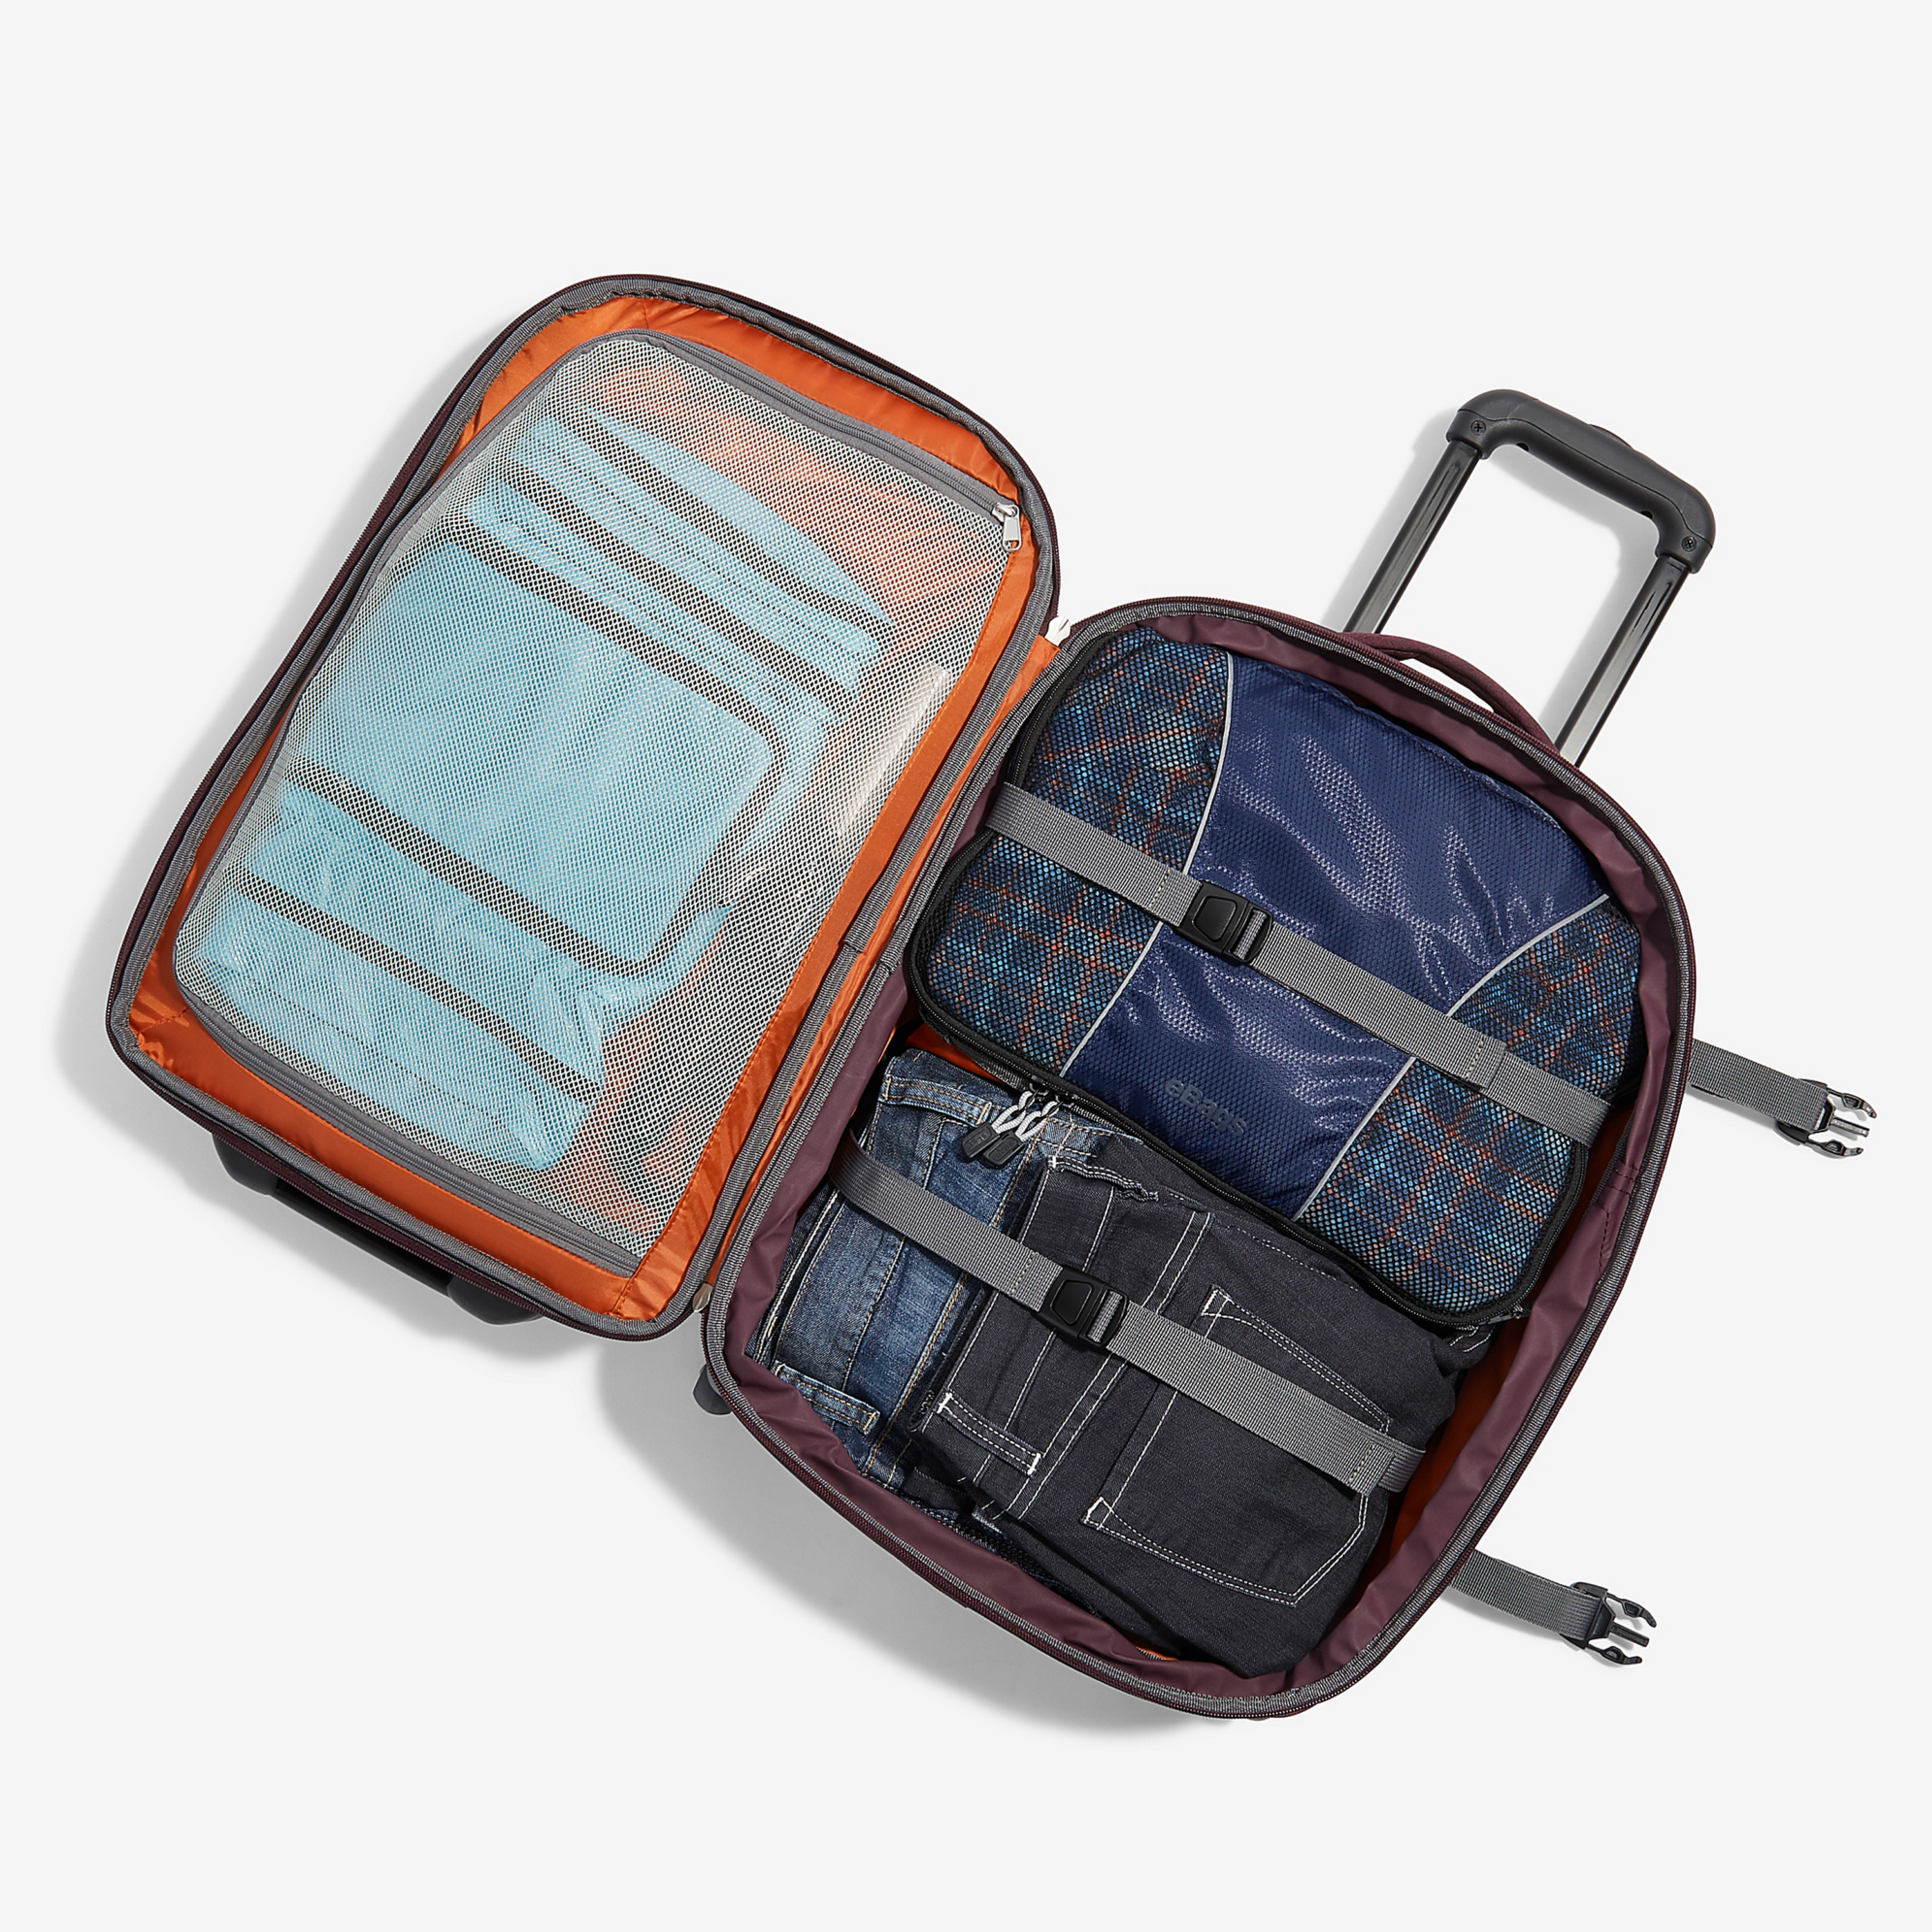 ebags Mother Lode Travel Backpack (Brushed Indigo)